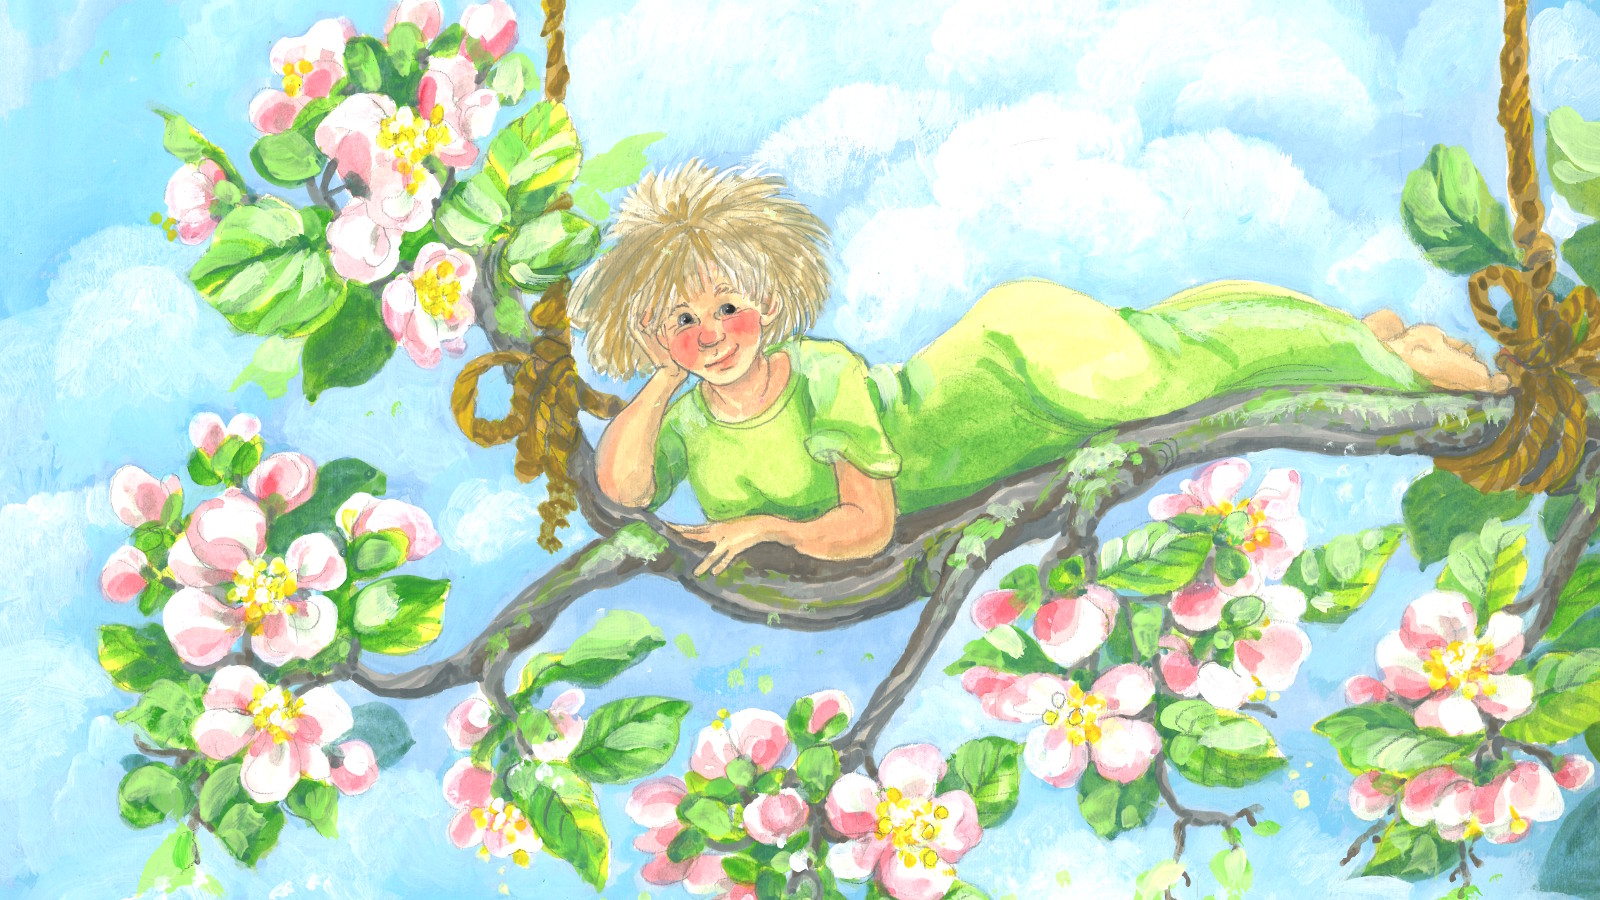 Kuvassa on vaalea nuori nainen makaamassa kyljellään nojaten oikeaan käteensä kukkivan omenapuun oksalla. Taust on vaalean sinisen möykkypilvinen ja naisella on vaalean vihreä tiukka puku päällään.